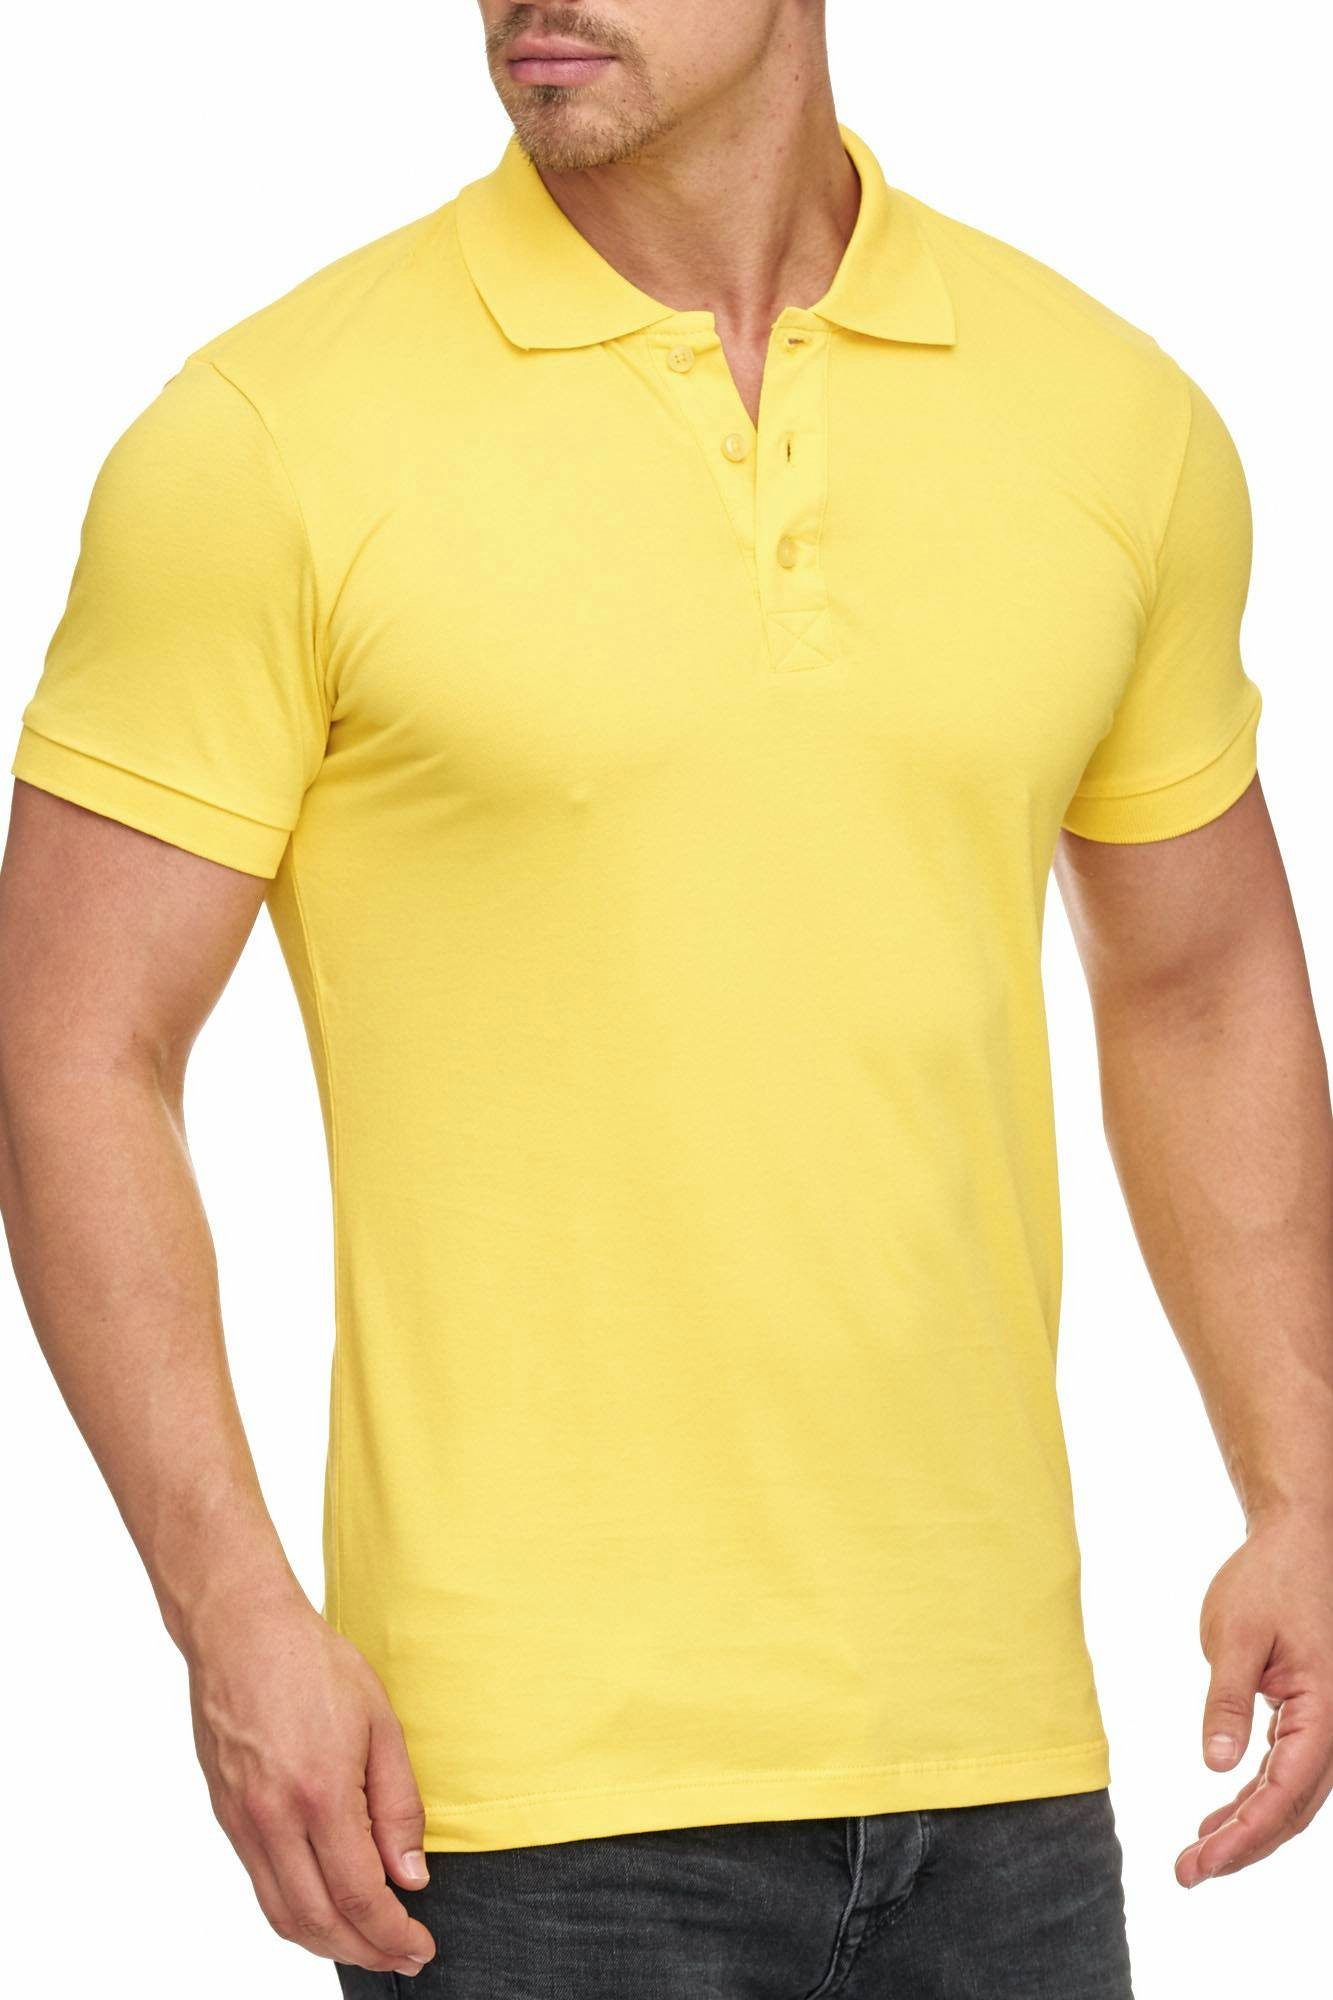 Tazzio Poloshirt 17101 zeitloses Polo Shirt gelb